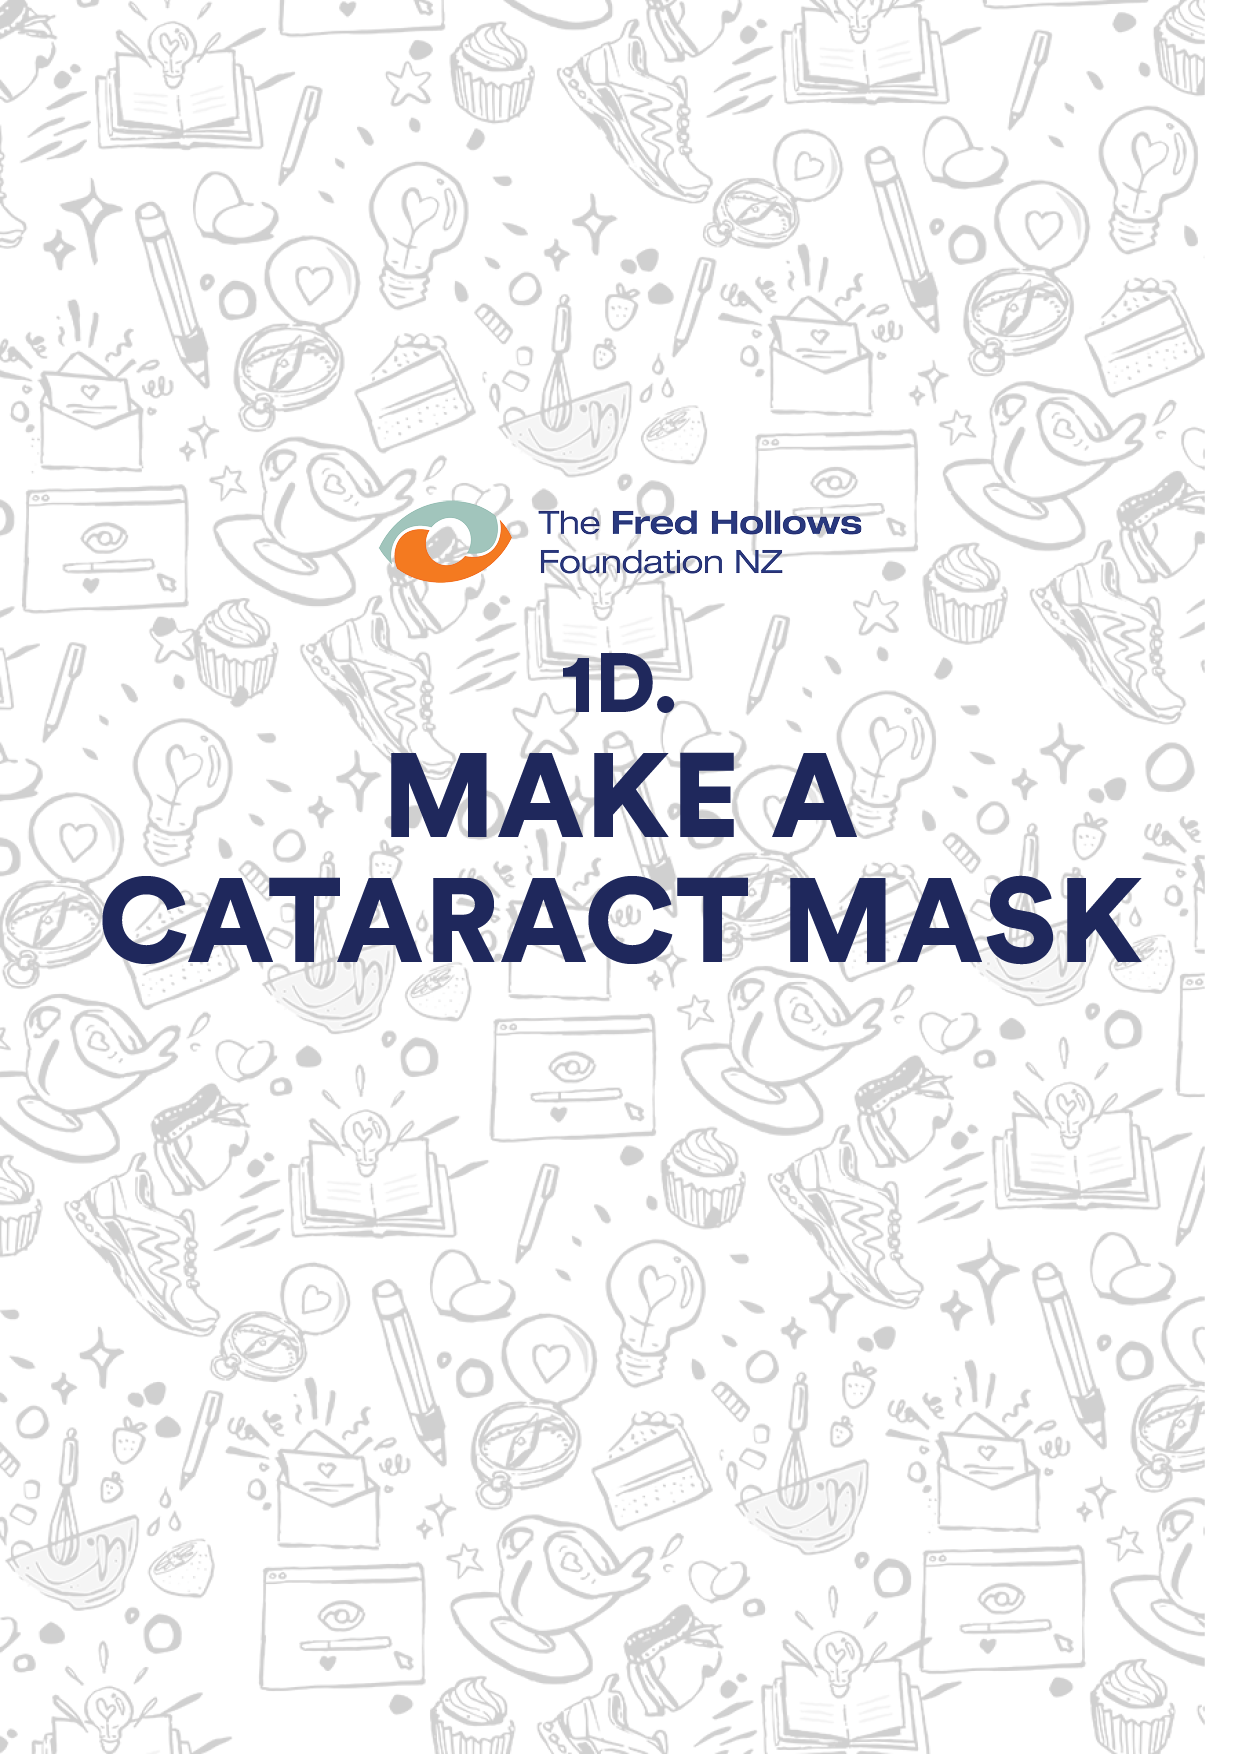 1d. Teacher resource - make a cataract mask.pptx